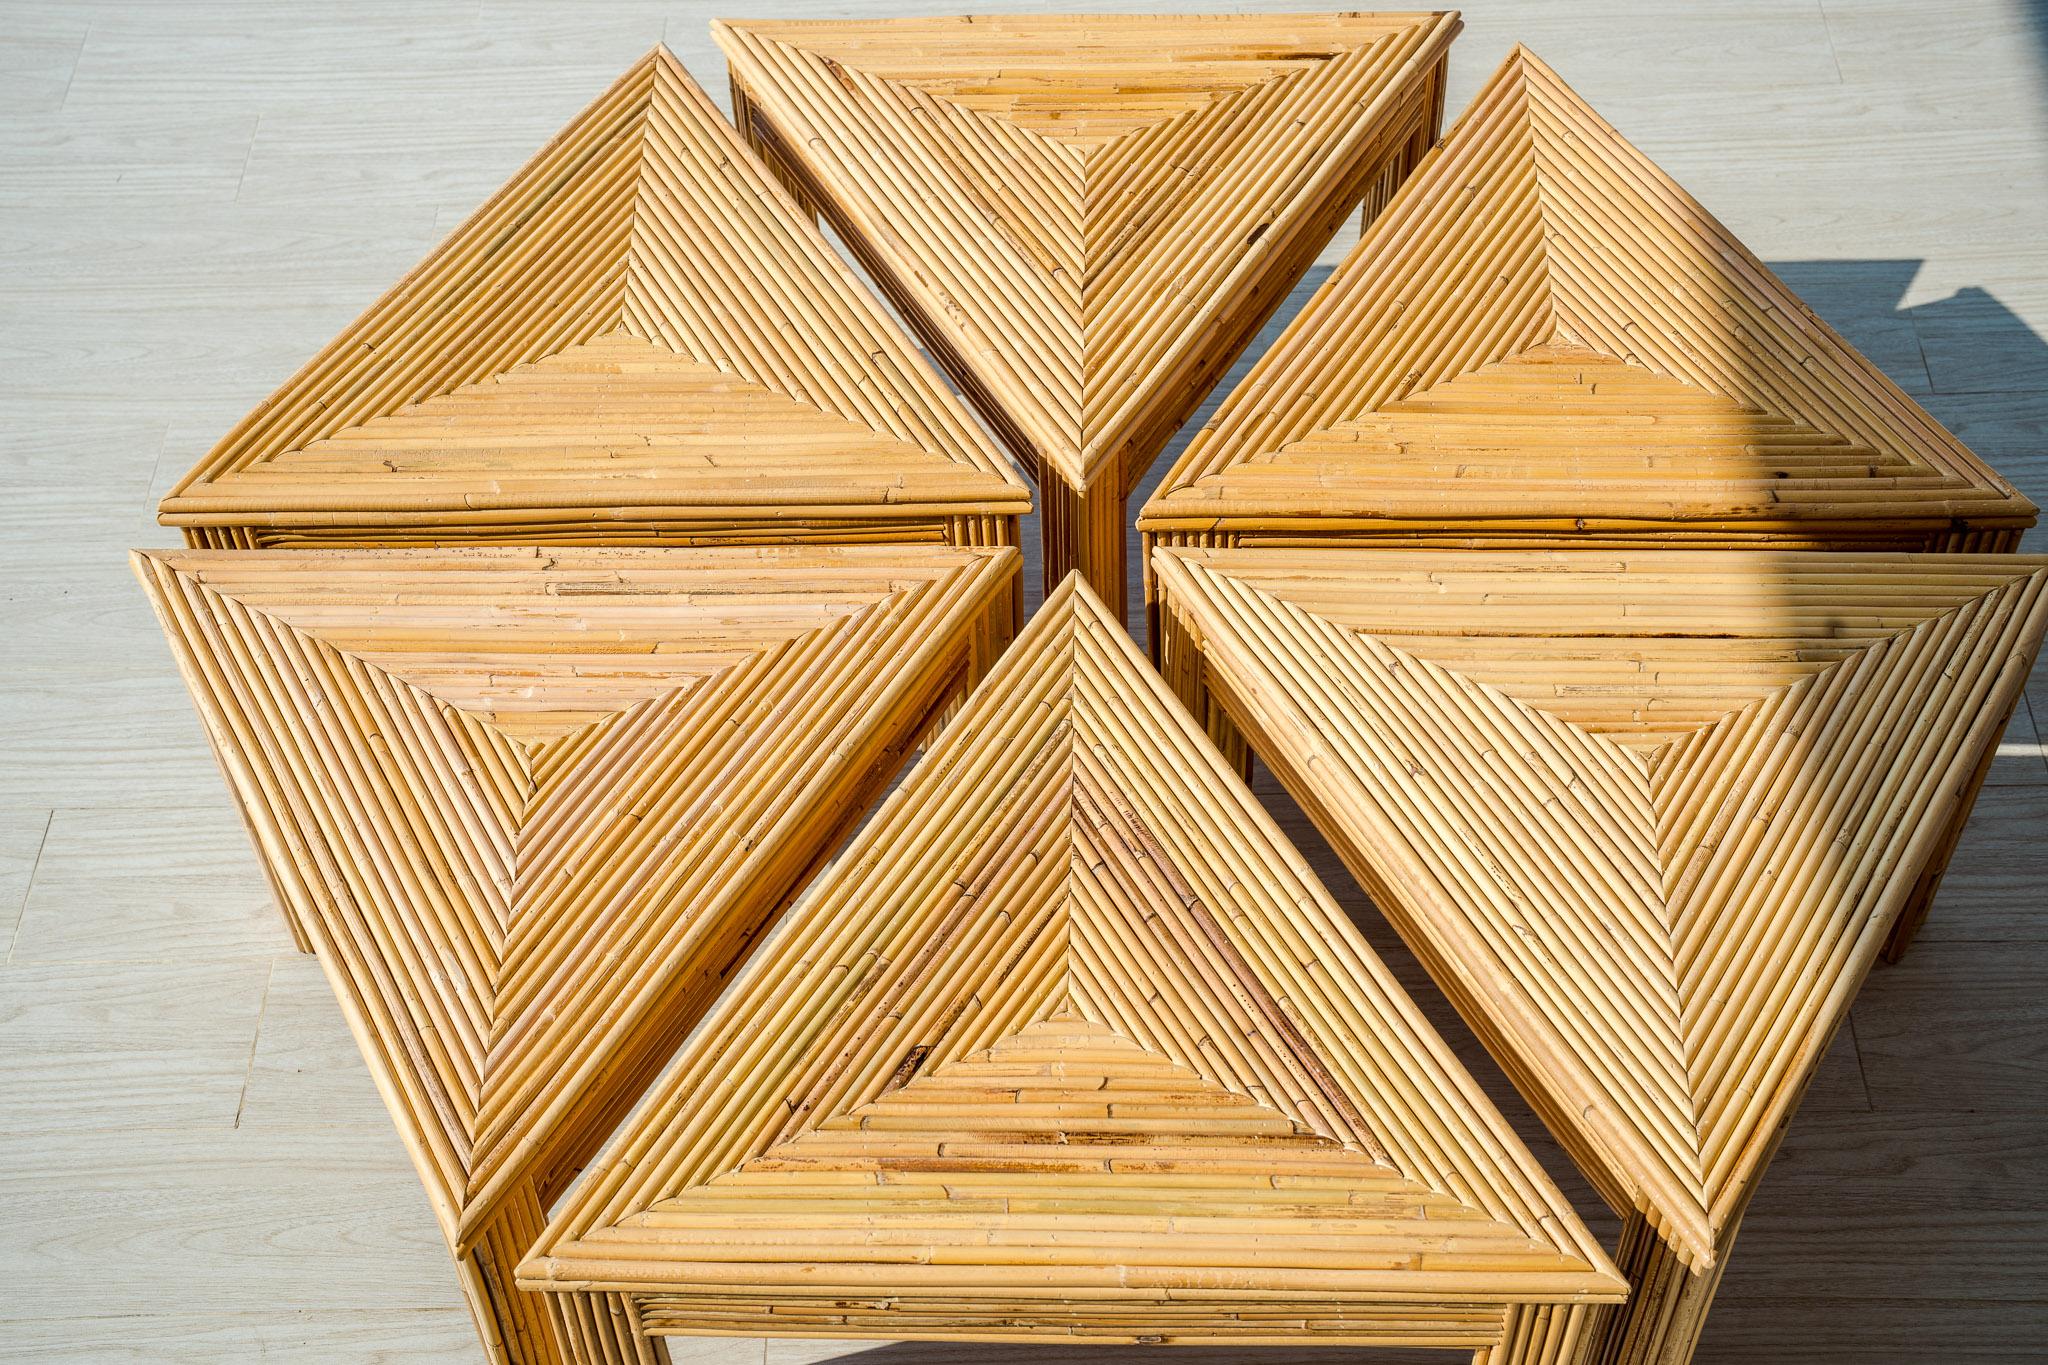 Kreieren Sie Ihre eigene Couchtischform mit diesen lustigen und dennoch 6 funktionalen Dreieckstischen aus Rattan. Hochwertige, vollständig handgefertigte Arbeiten. Ausgezeichneter Zustand.